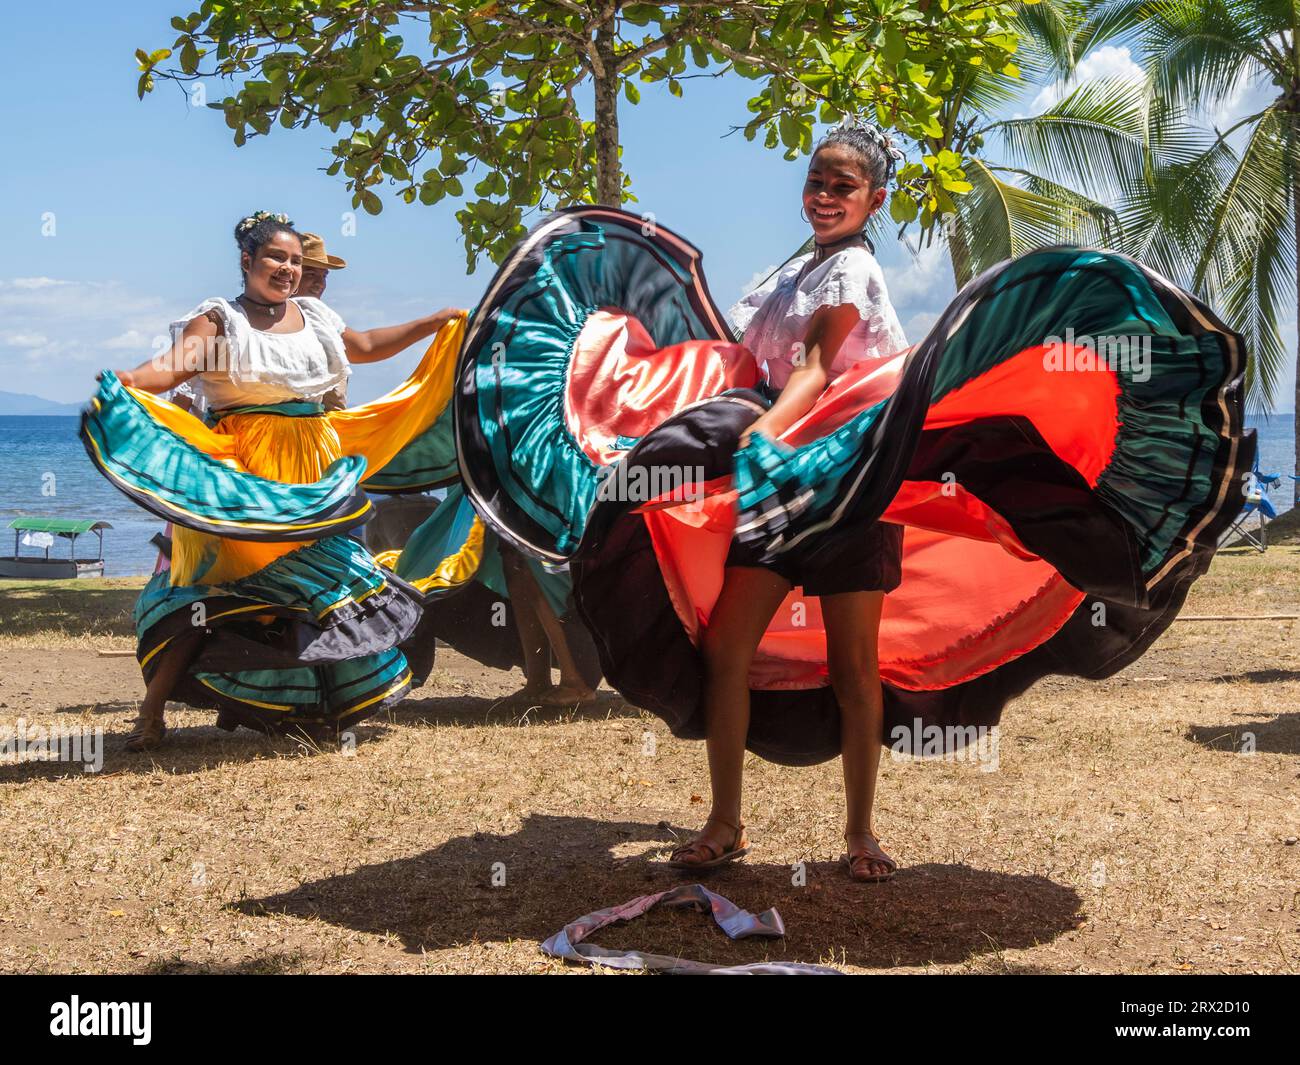 Un gruppo di giovani ballerini costaricani in abiti tradizionali si esibiscono a Playa Blanca, El Golfito, Costa Rica, America centrale Foto Stock